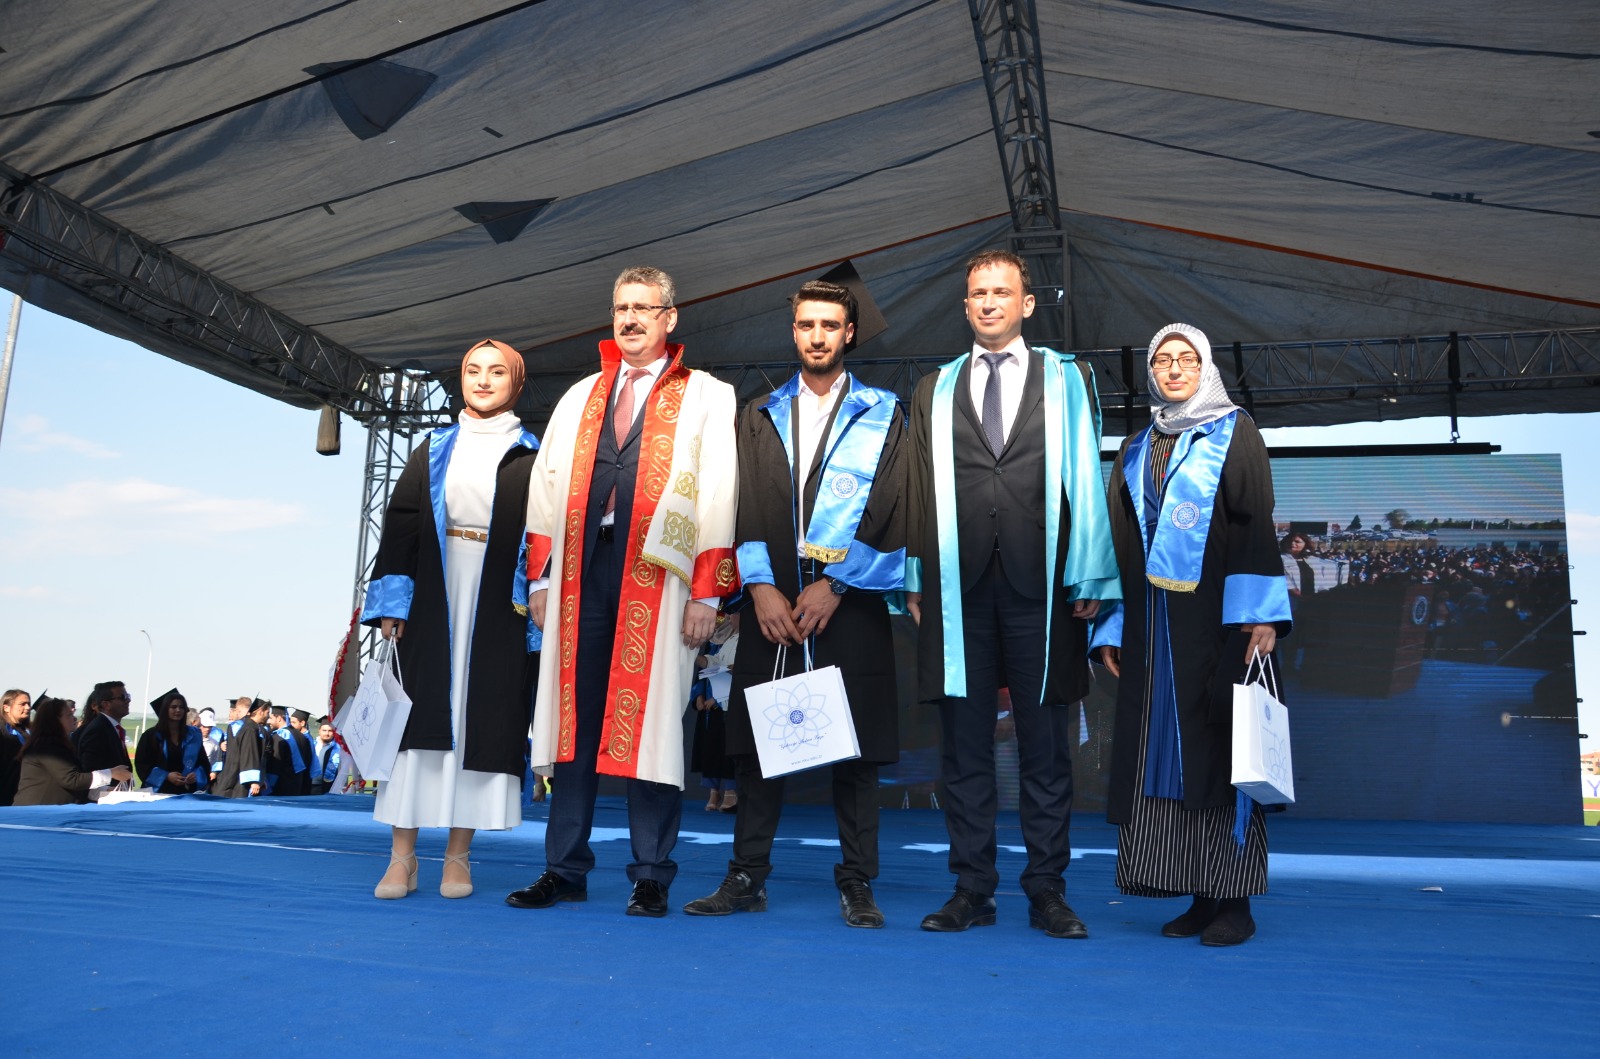 Namık Kemal Üniversitesi29